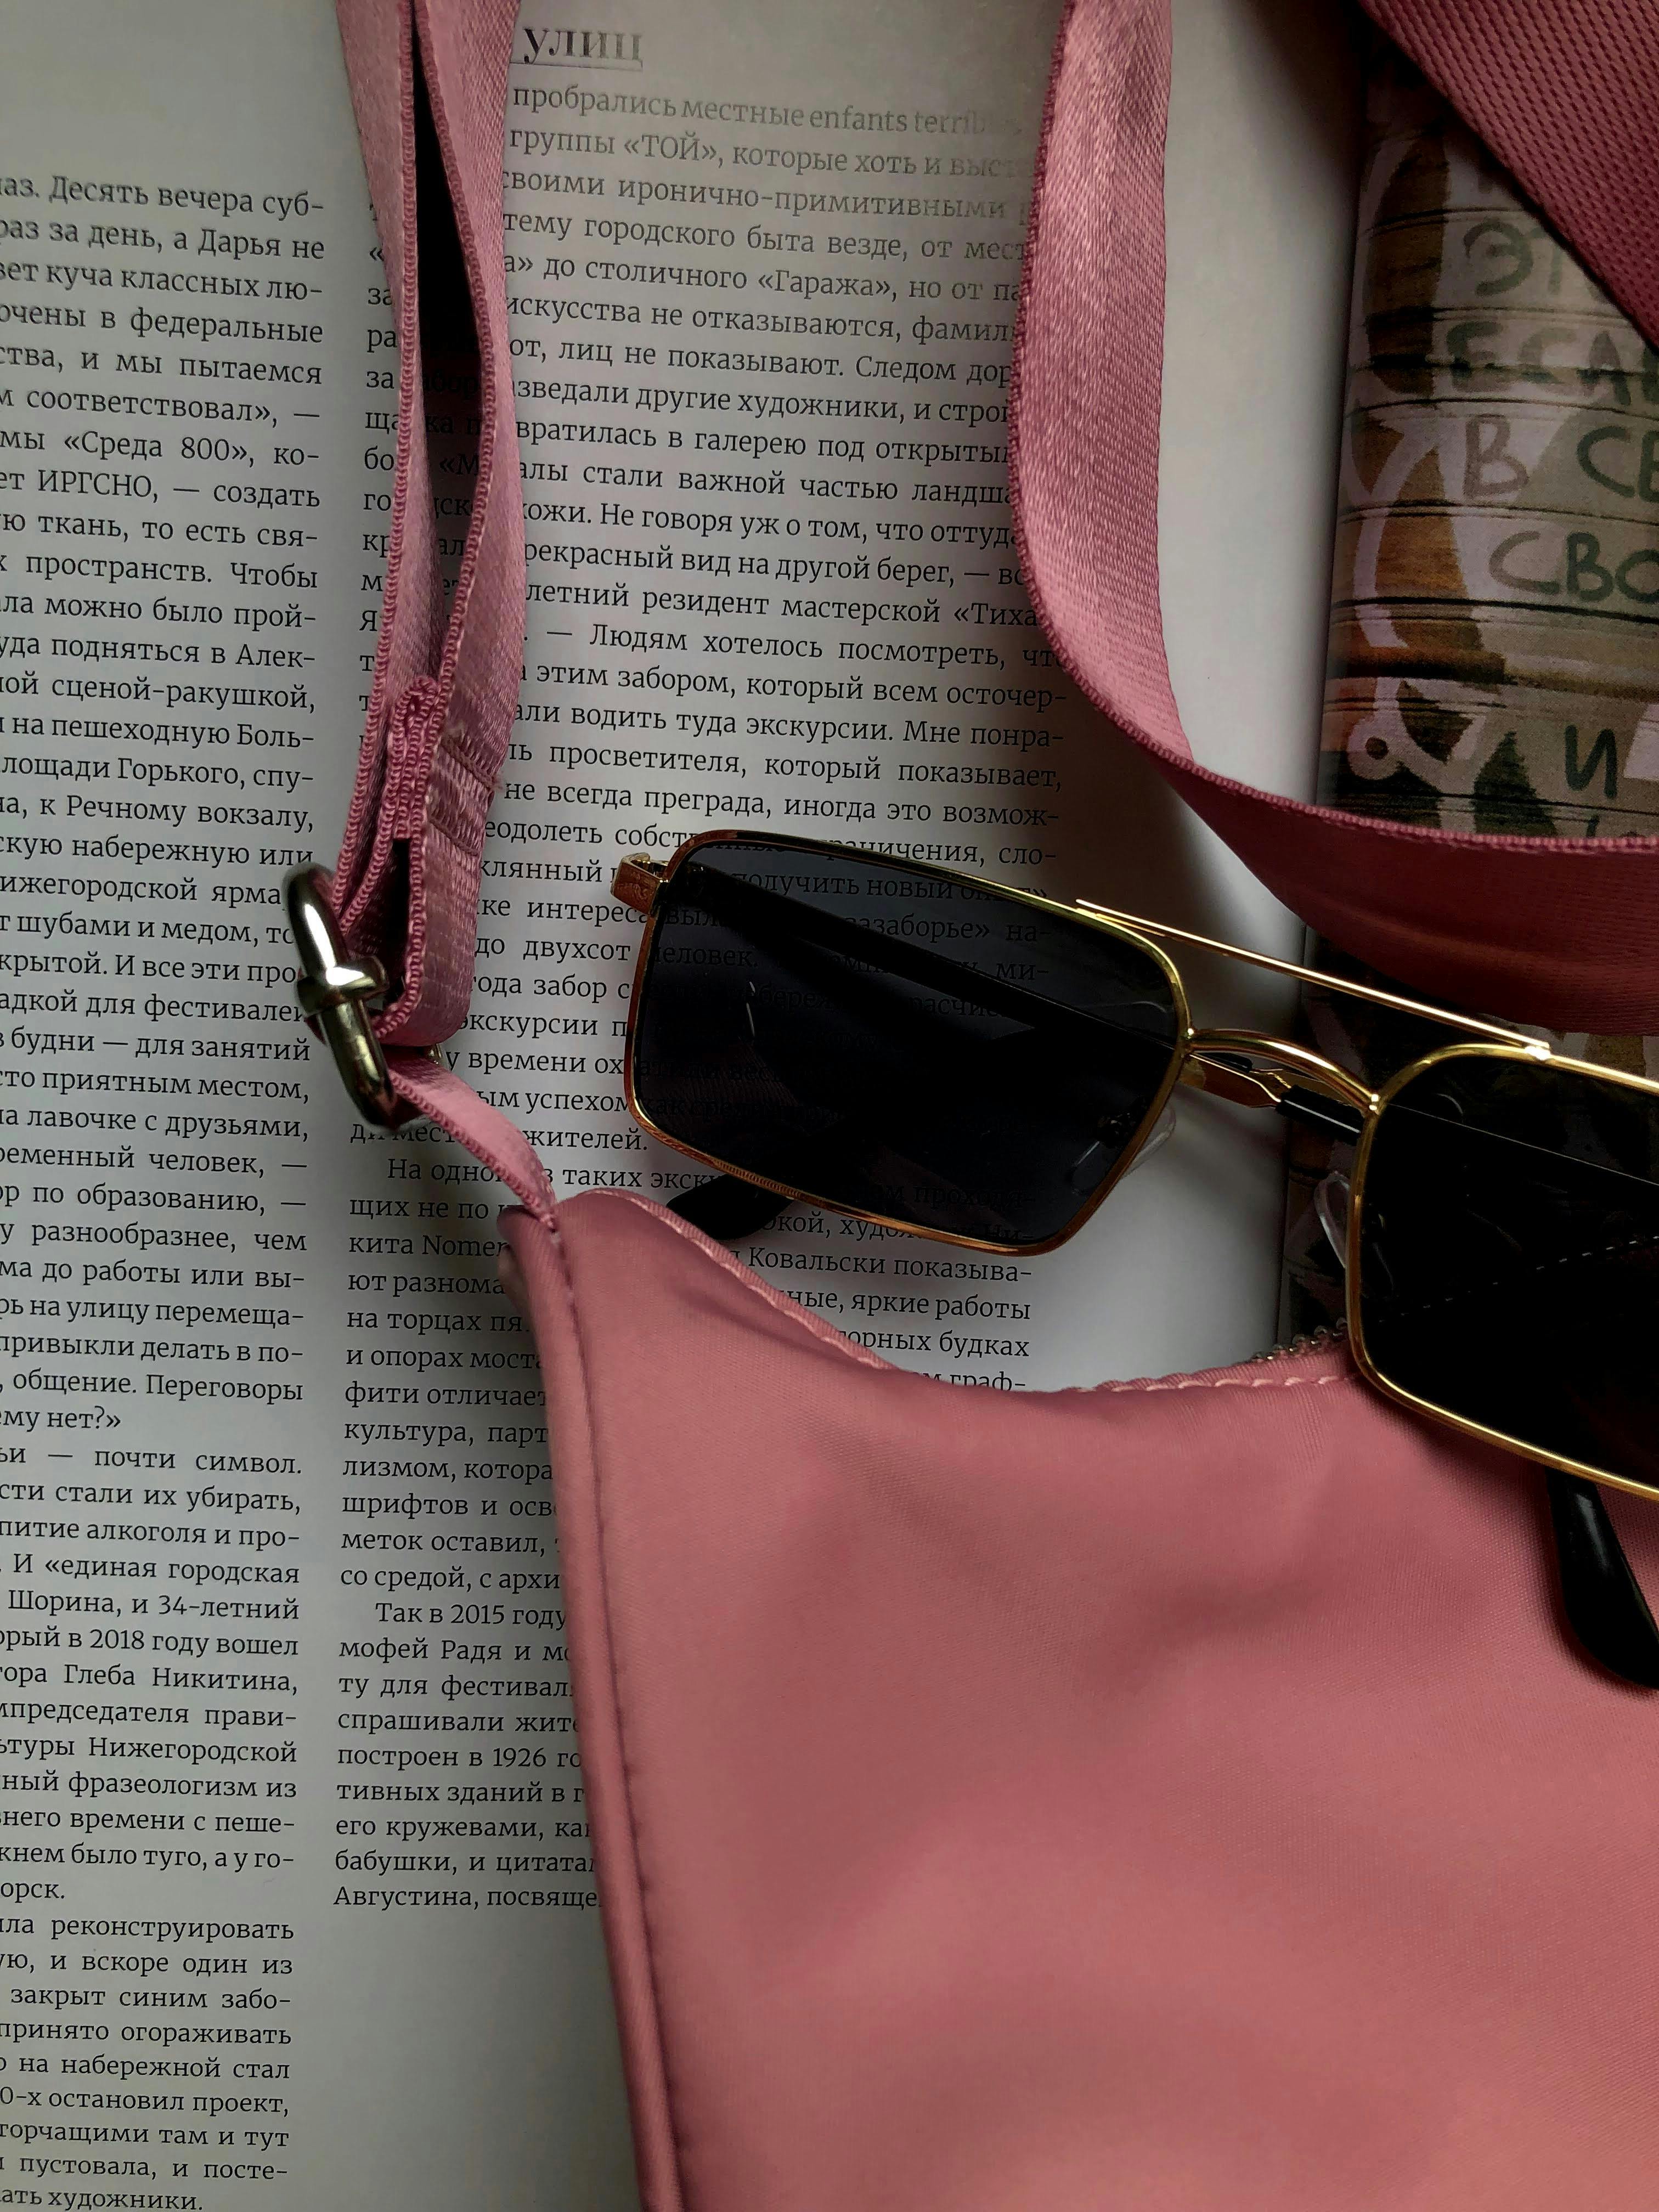 Handbag Pink PNG Clip Art | Purses, Bag clips, Handbag